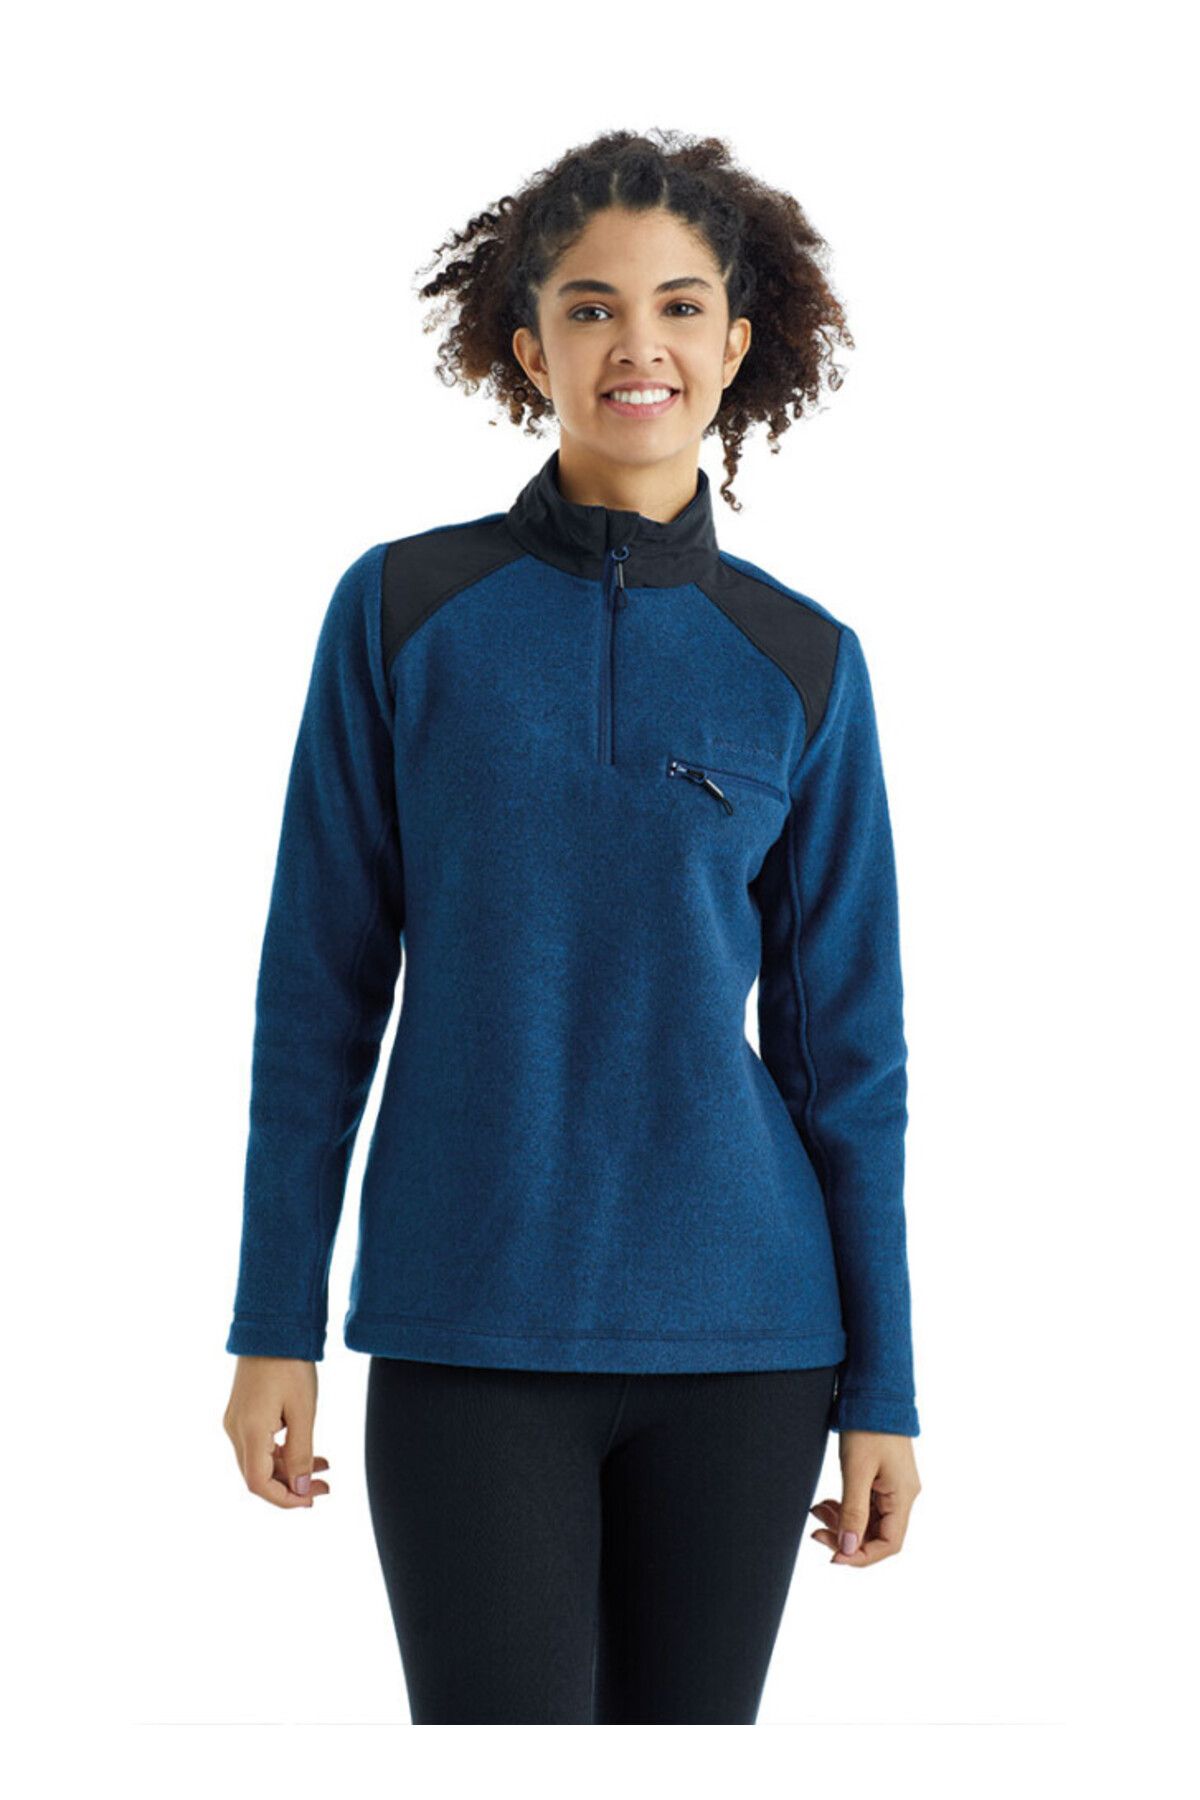 Blackspade Kadın Sweatshirt 50944 - Lacivert